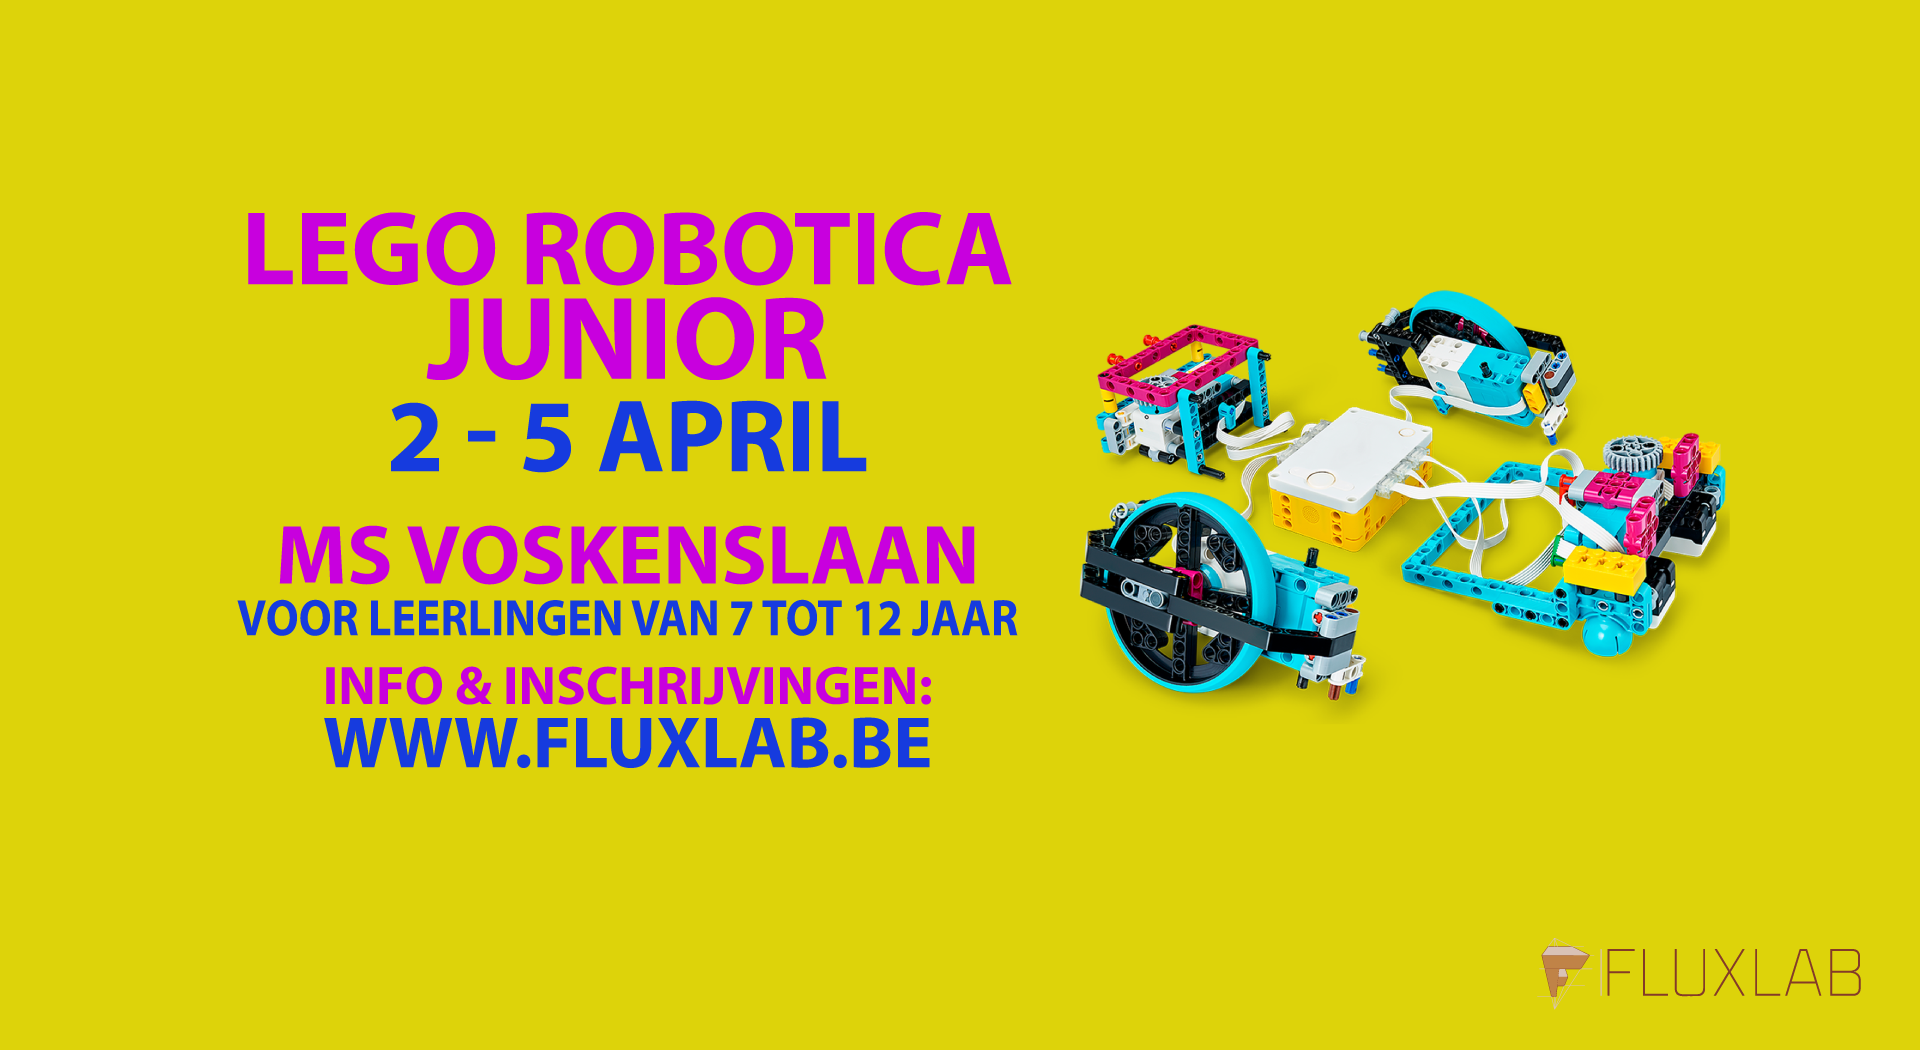 Lego-robotica-junior-PAsen-Voskenslaan